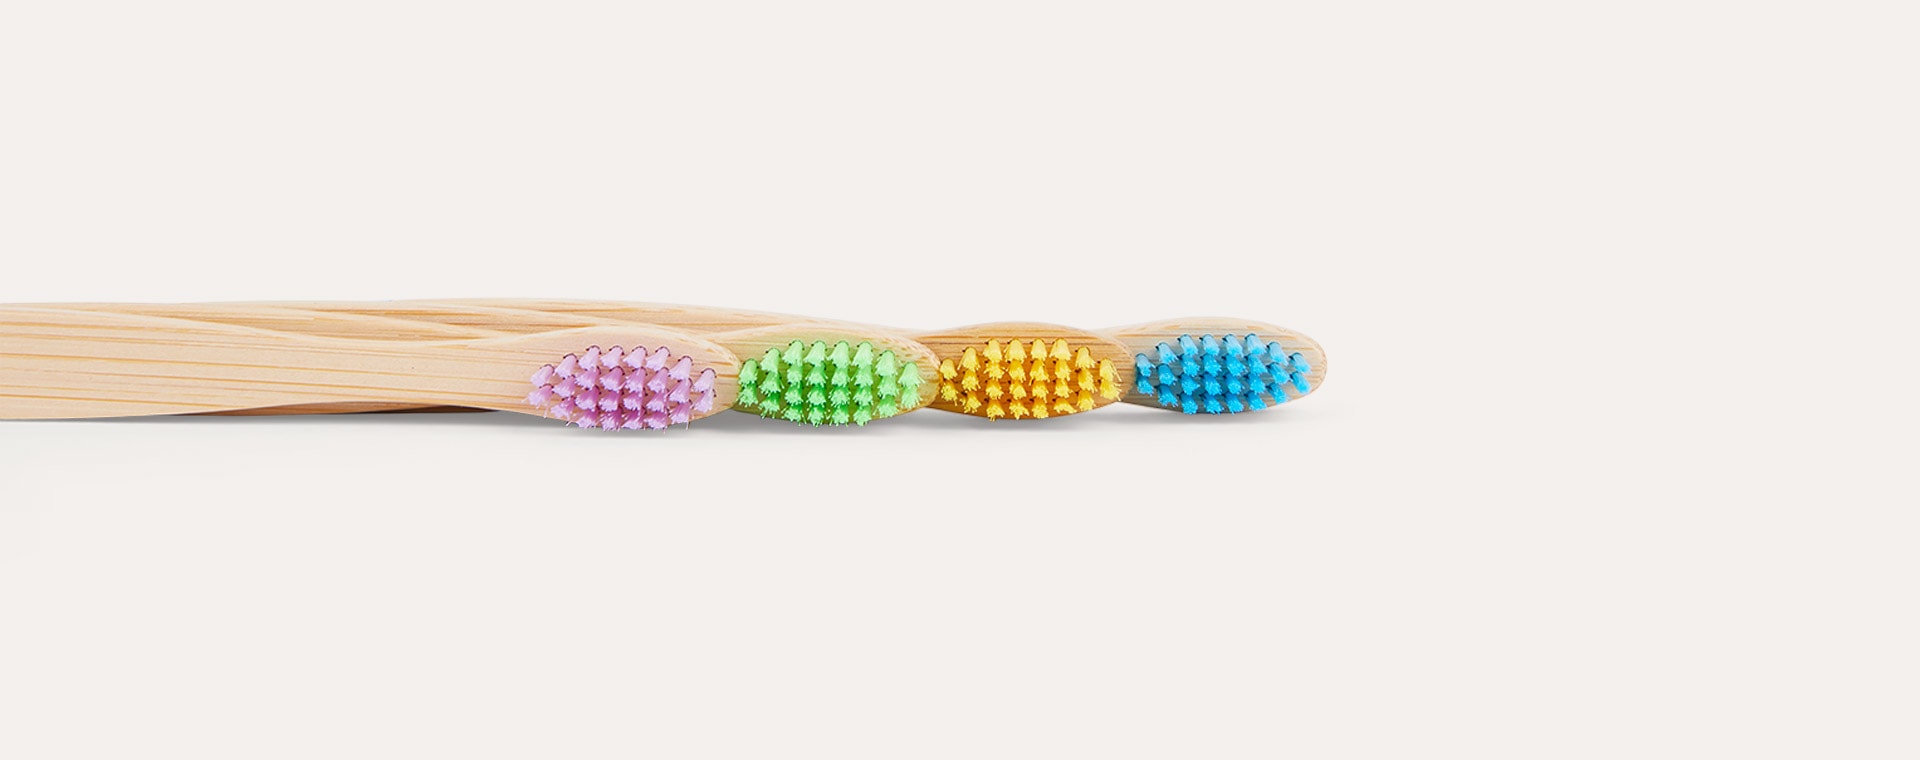 Yellow, Blue, Purple & Green Wild & Stone 4-Pack Organic Children's Bamboo Toothbrush